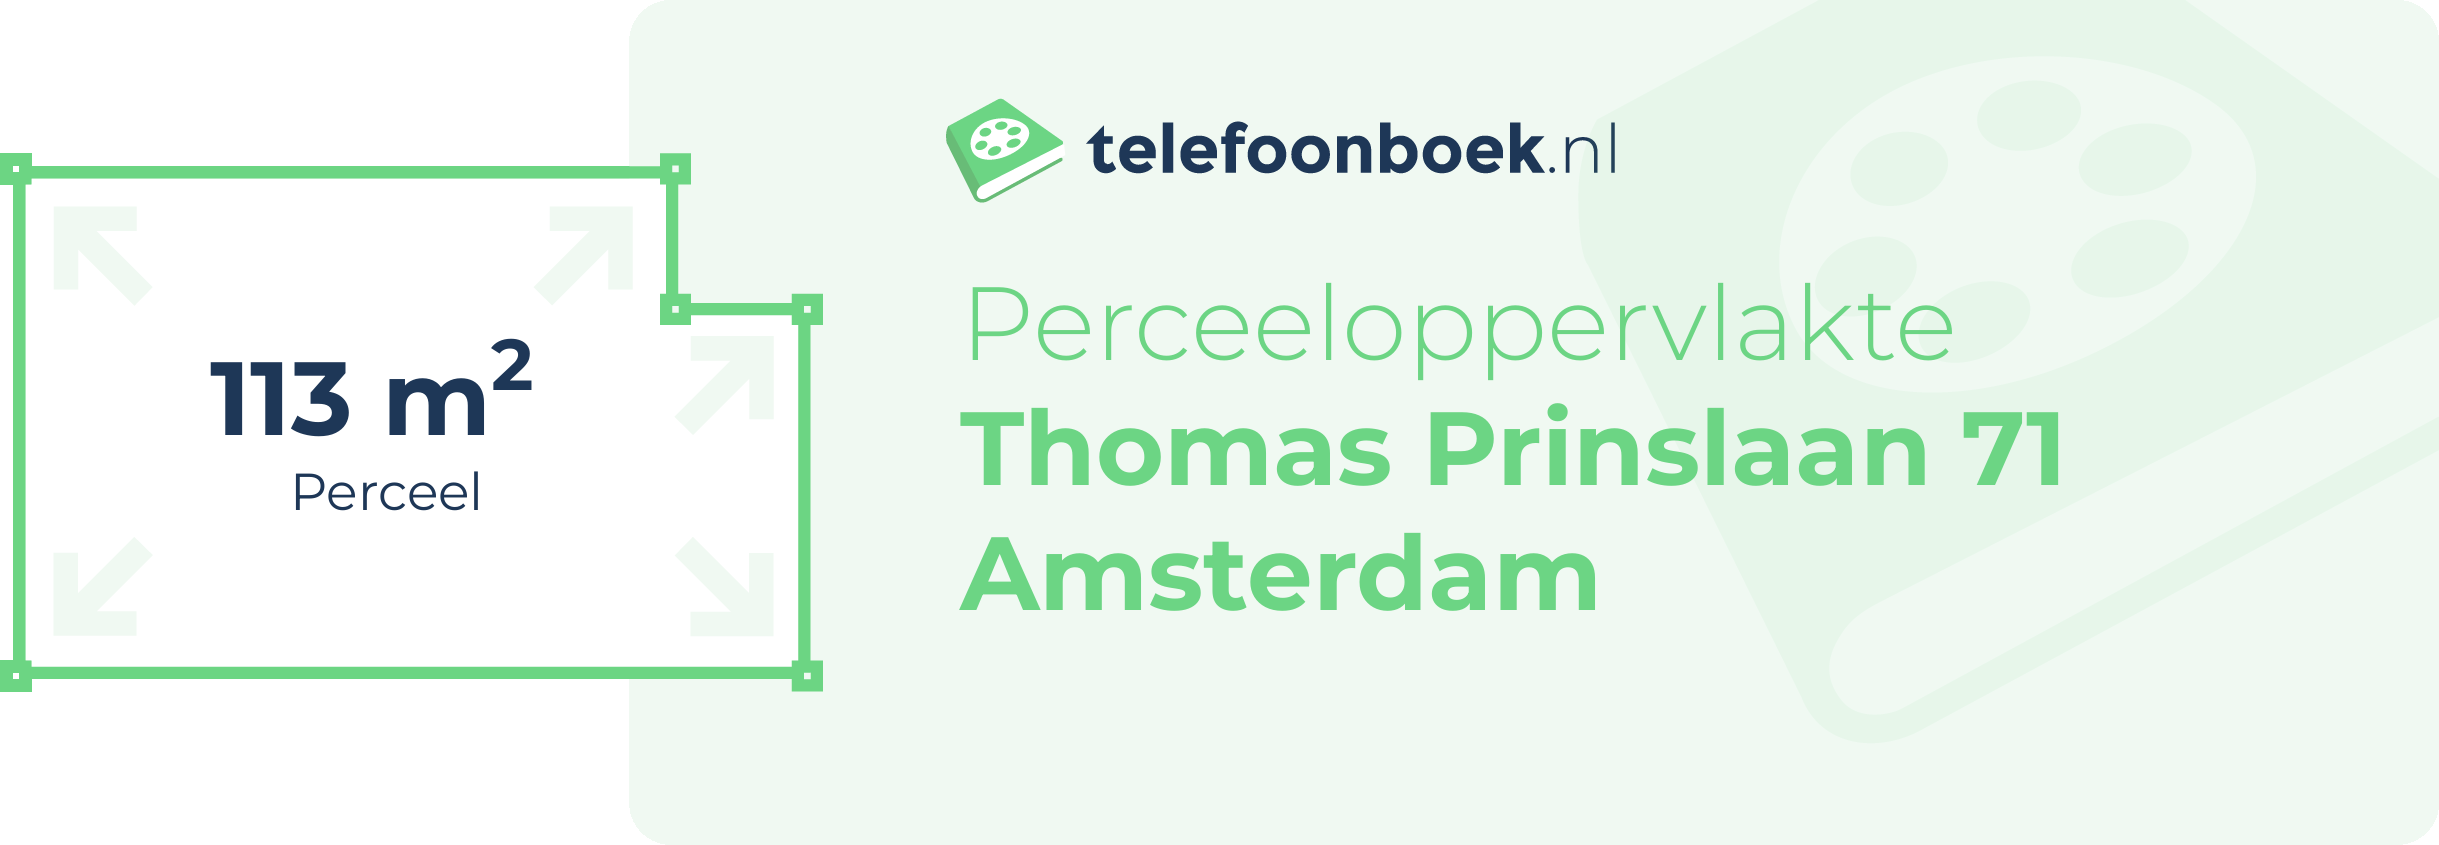 Perceeloppervlakte Thomas Prinslaan 71 Amsterdam